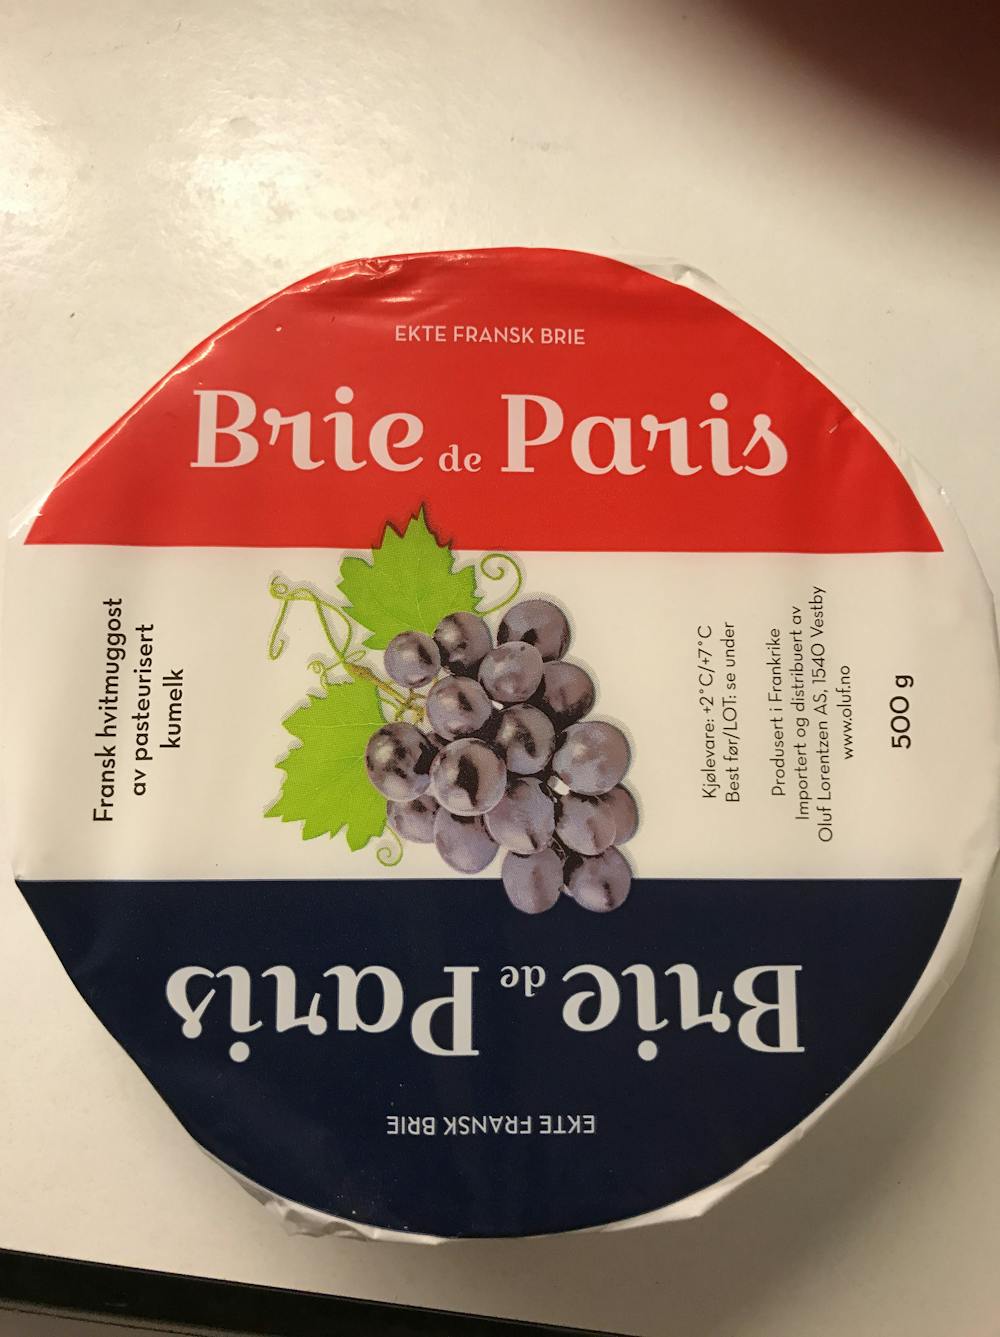 Brie de Paris, Oluf lorentzen